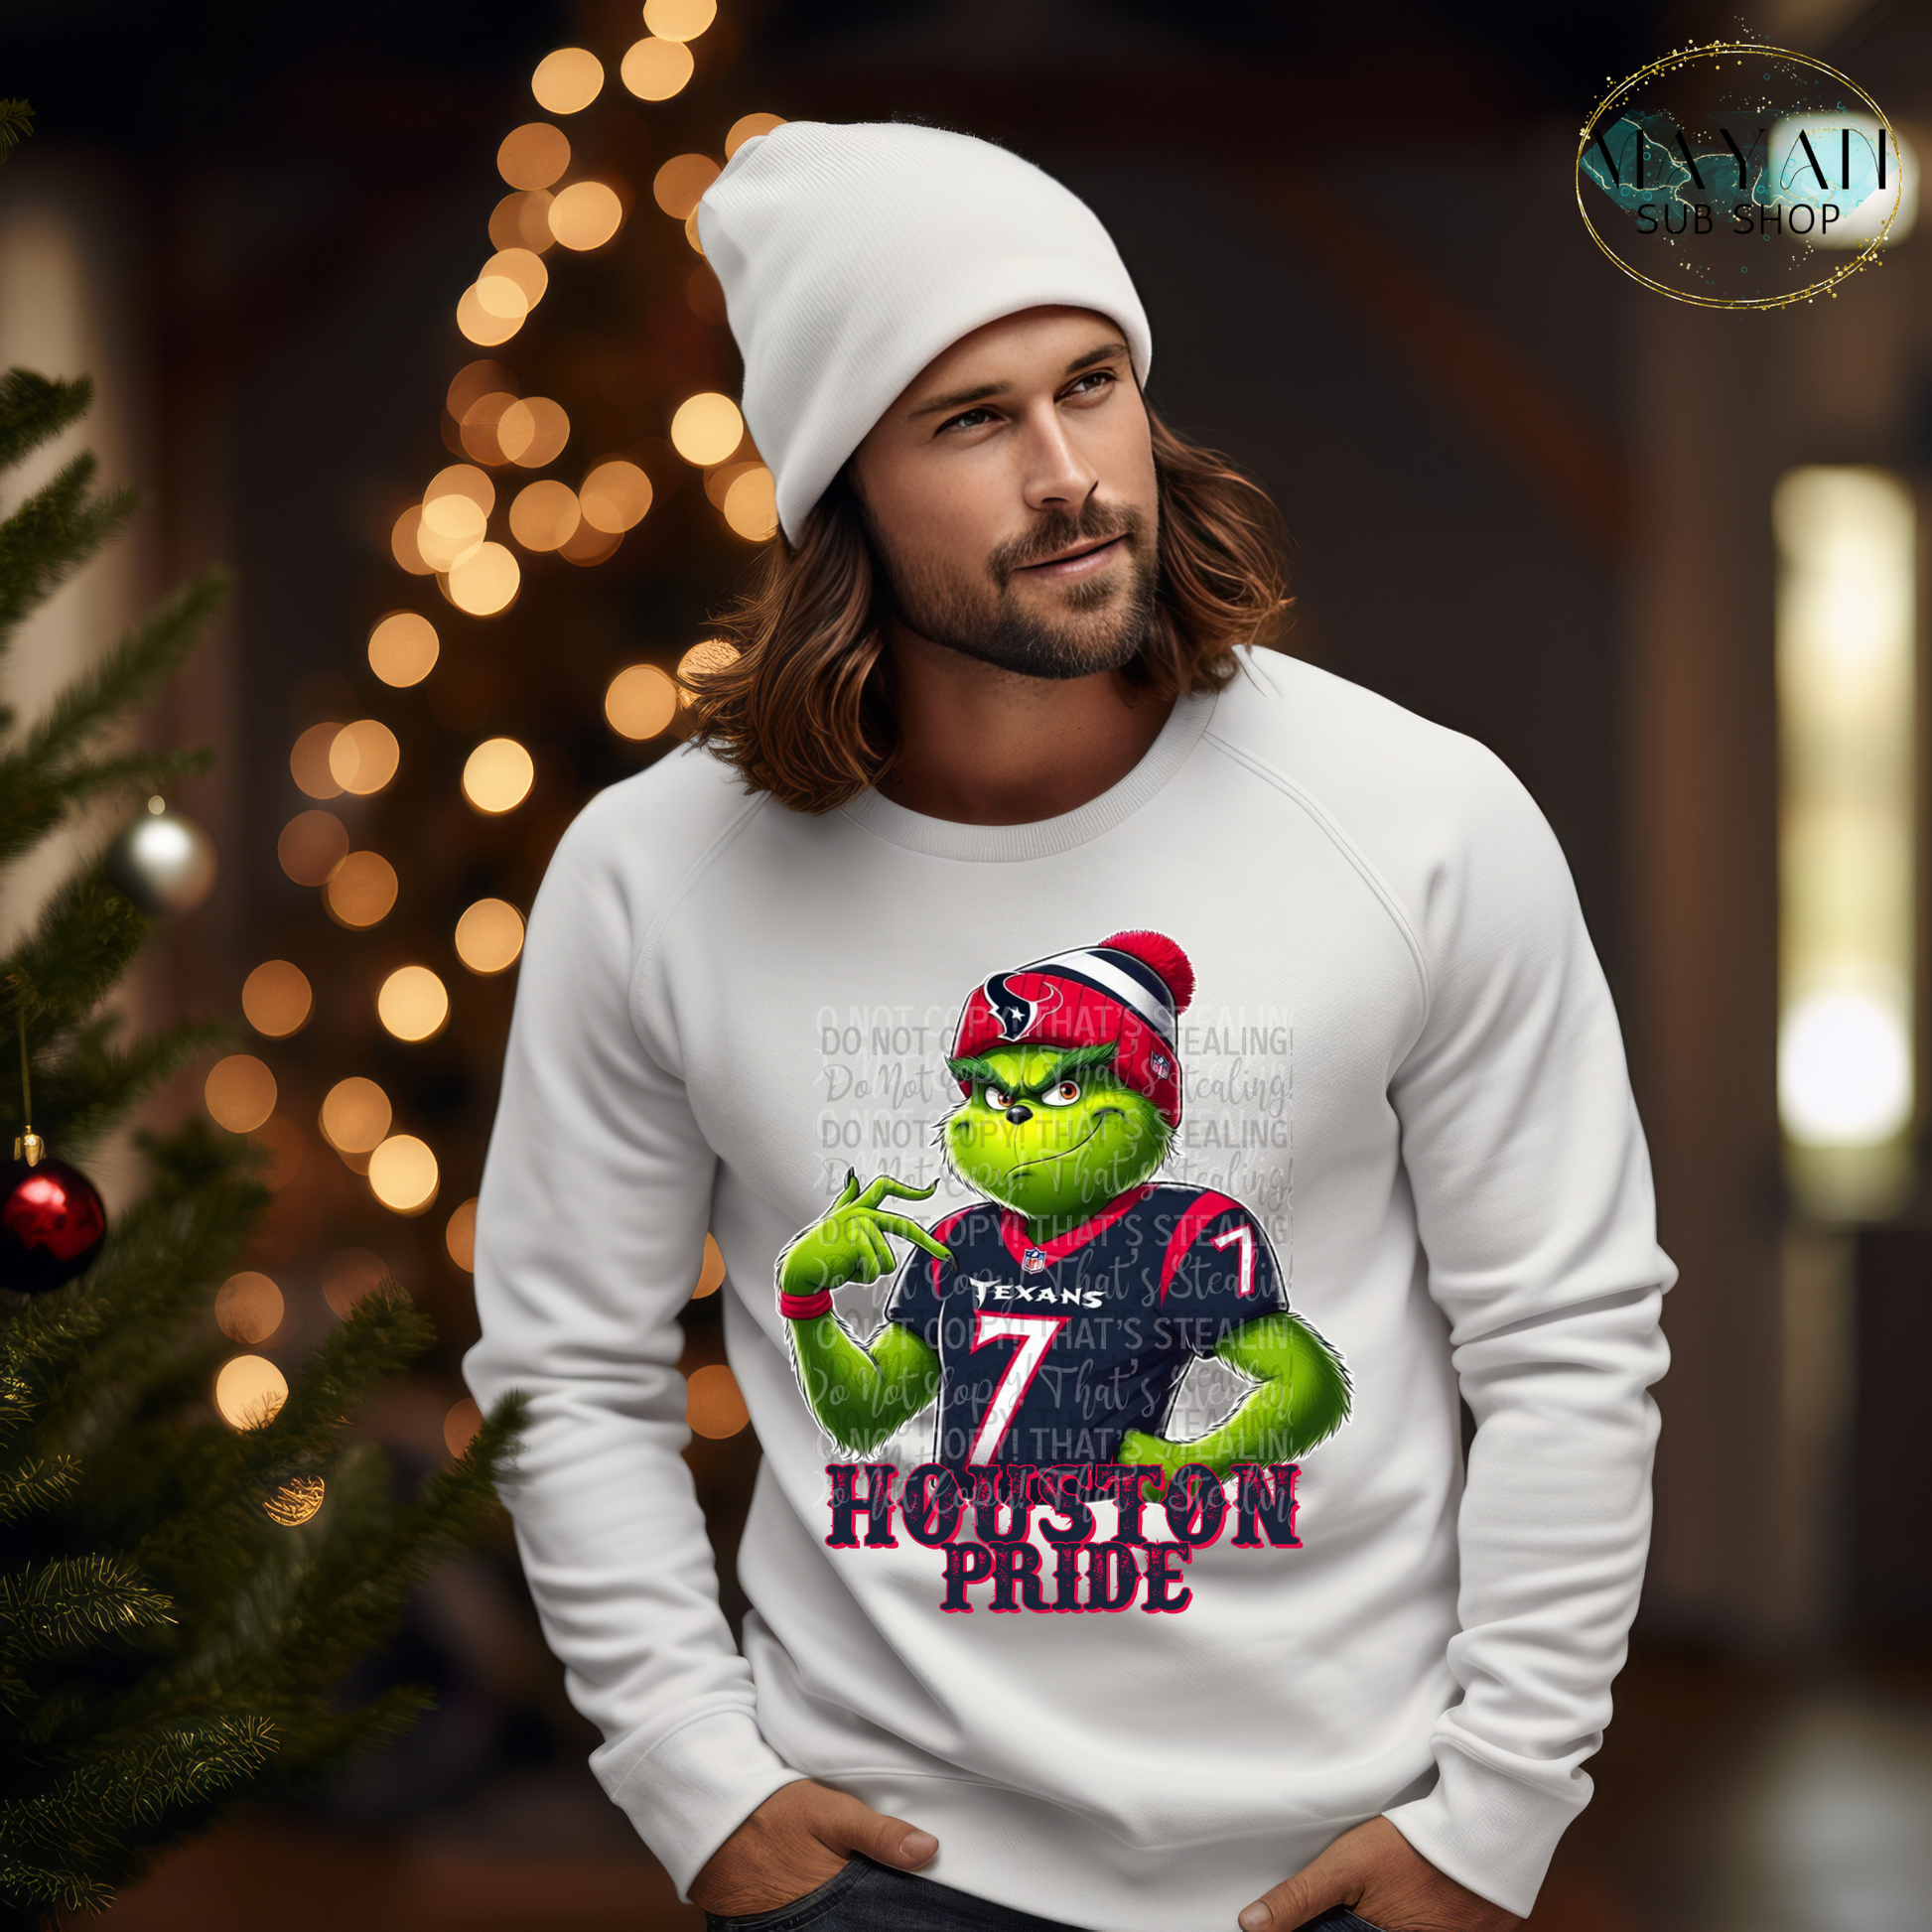 Houston Football sweatshirt. -Mayan Sub Shop